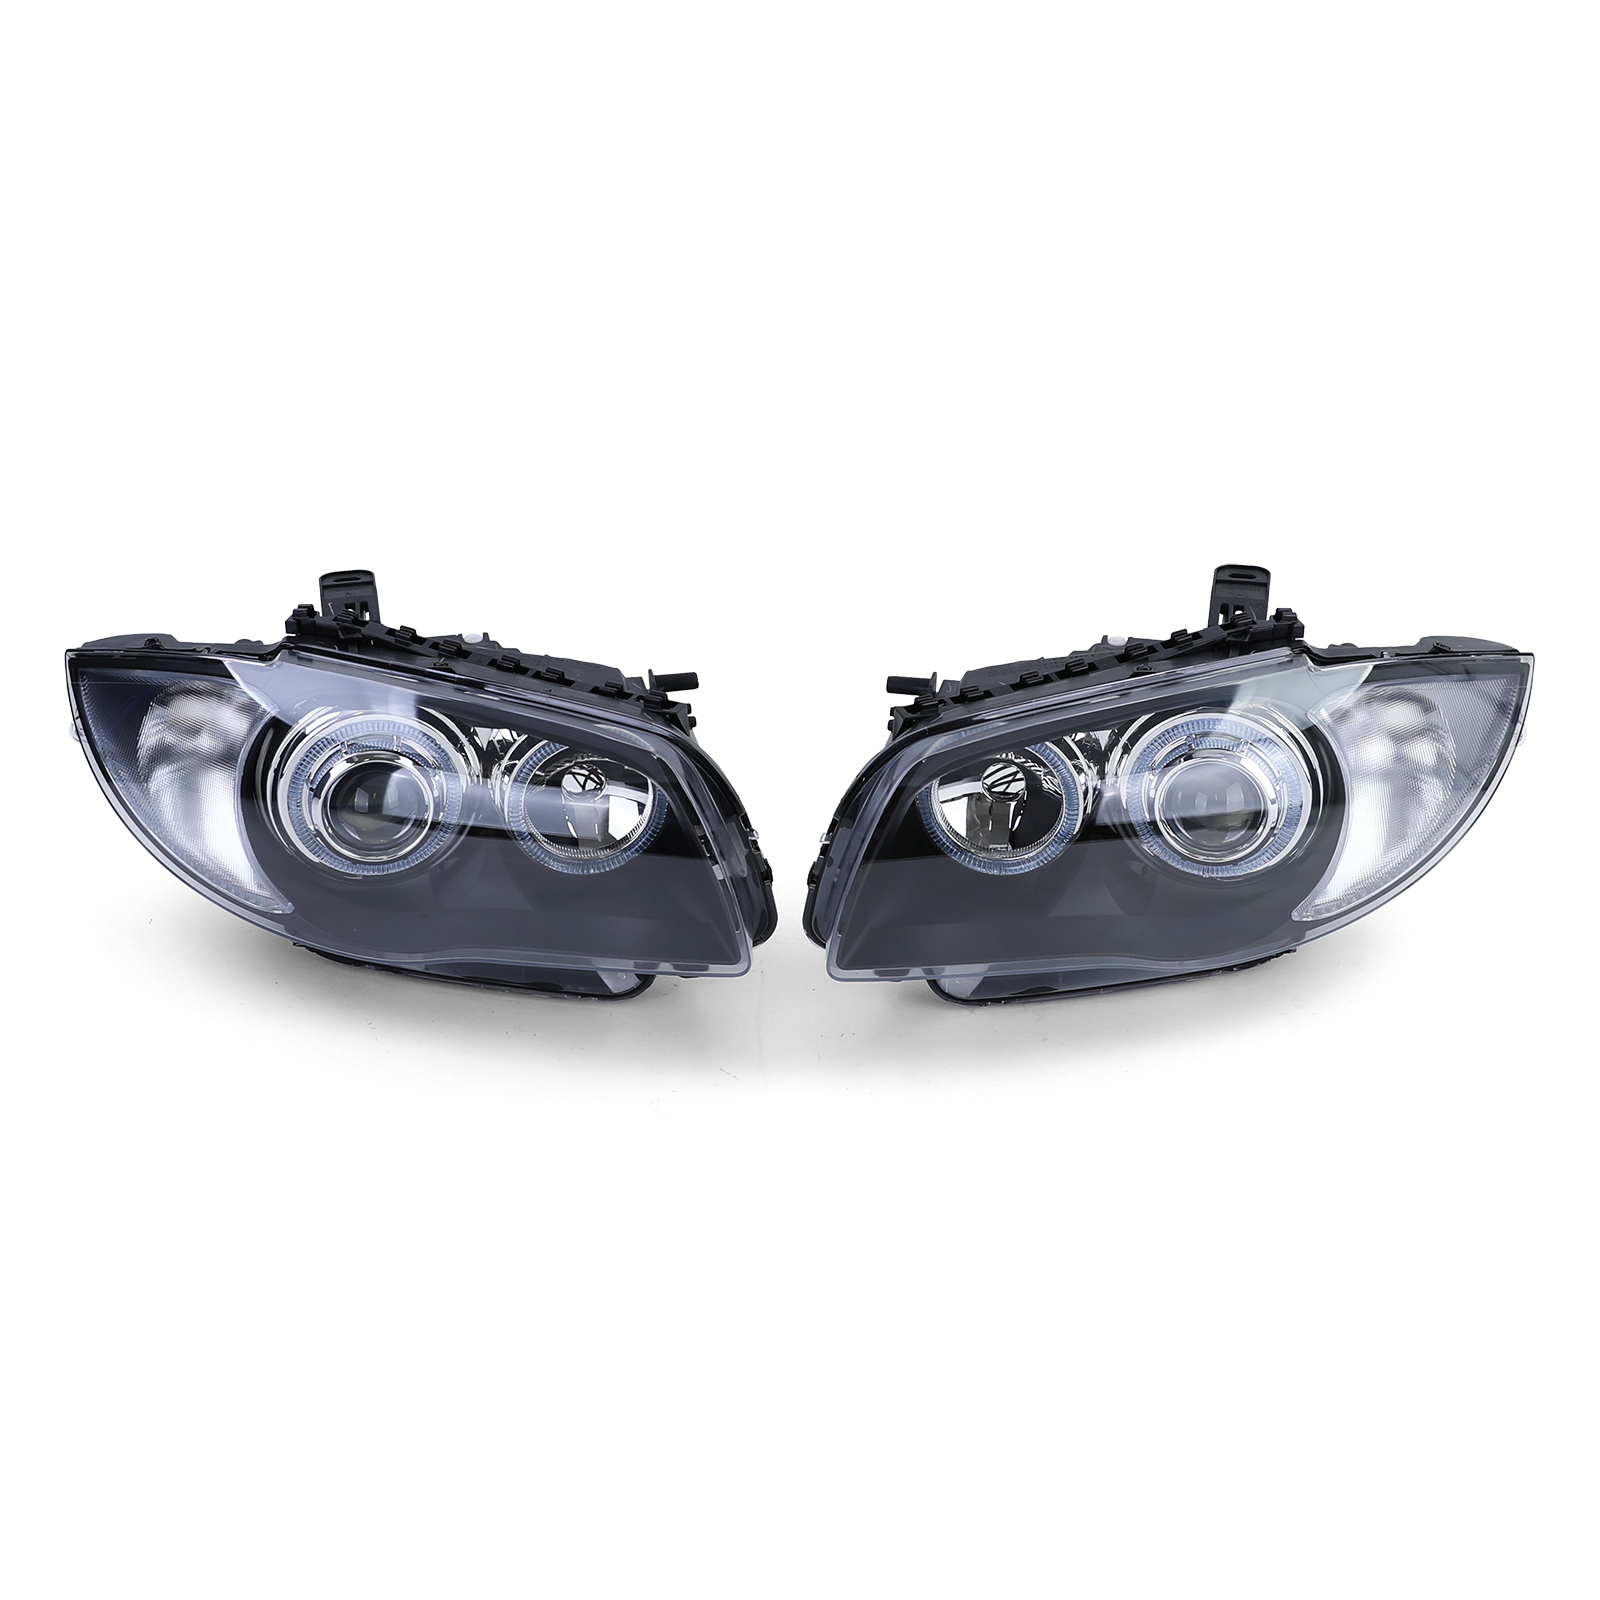 Highpower-LED Angel Eyes Scheinwerfer für BMW 1er E87 E81 04-11 schwarz  black